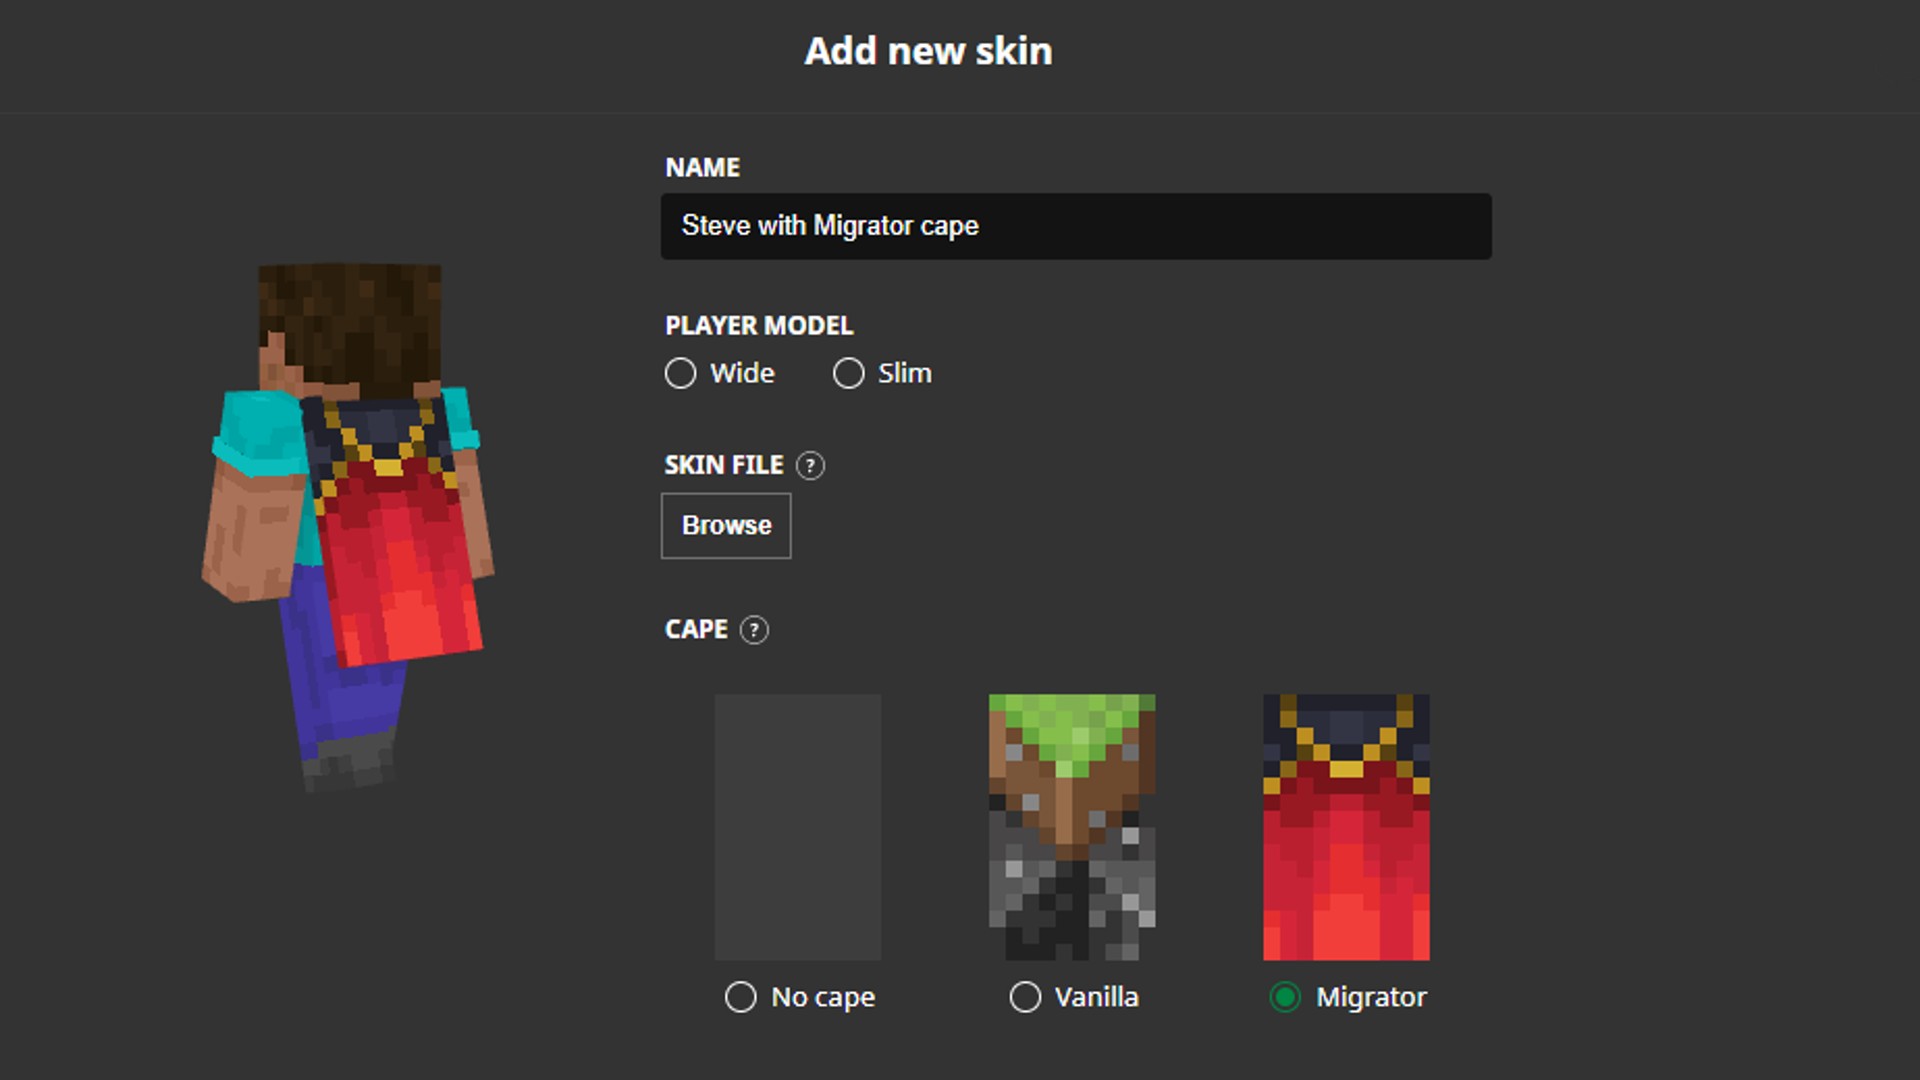 Minecraft Earth Skin kostenlos freischalten